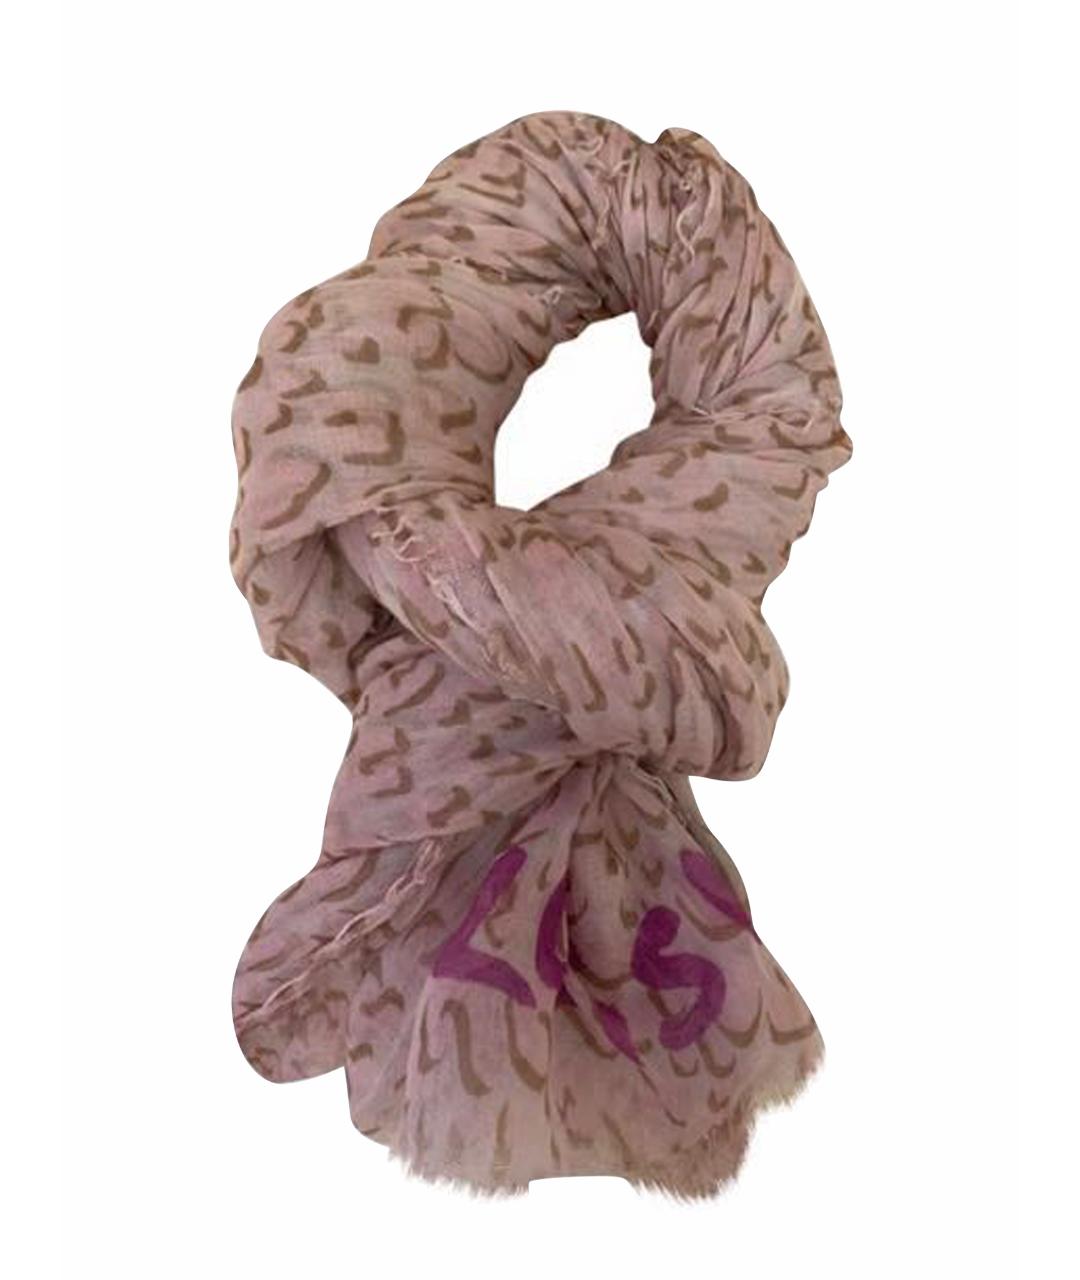 LOUIS VUITTON Розовый кашемировый шарф, фото 1